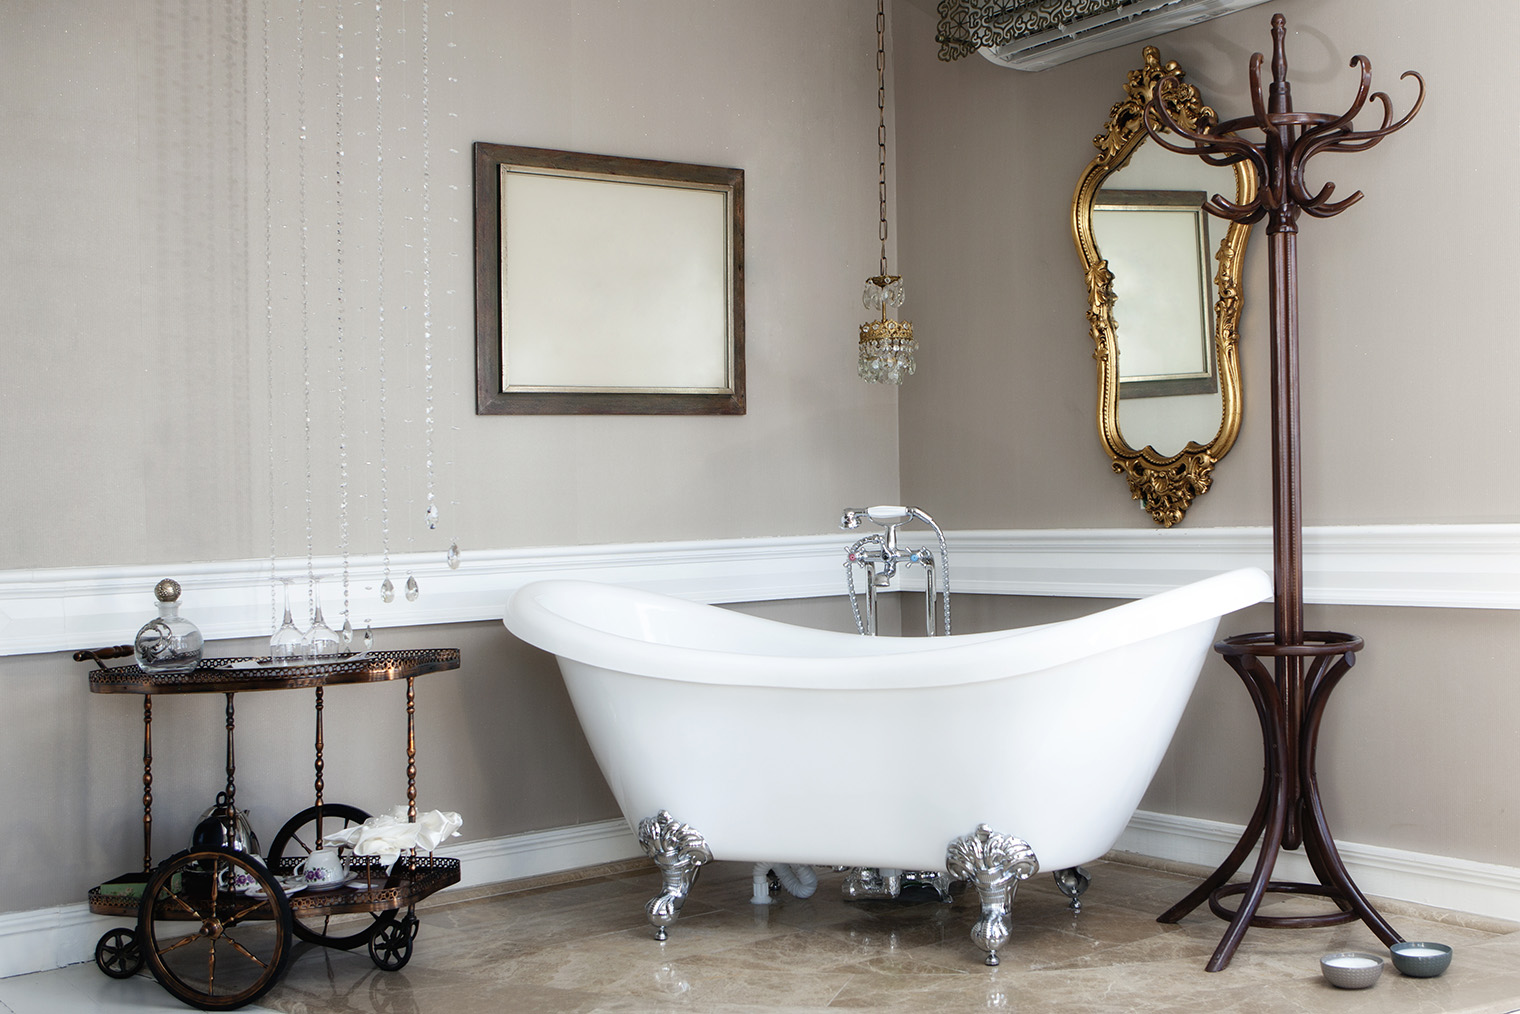 Применение серебра и хрома в классической ванной допустимо. Ножки ванны зачастую фигурные. Фотография: gifted / Shutterstock